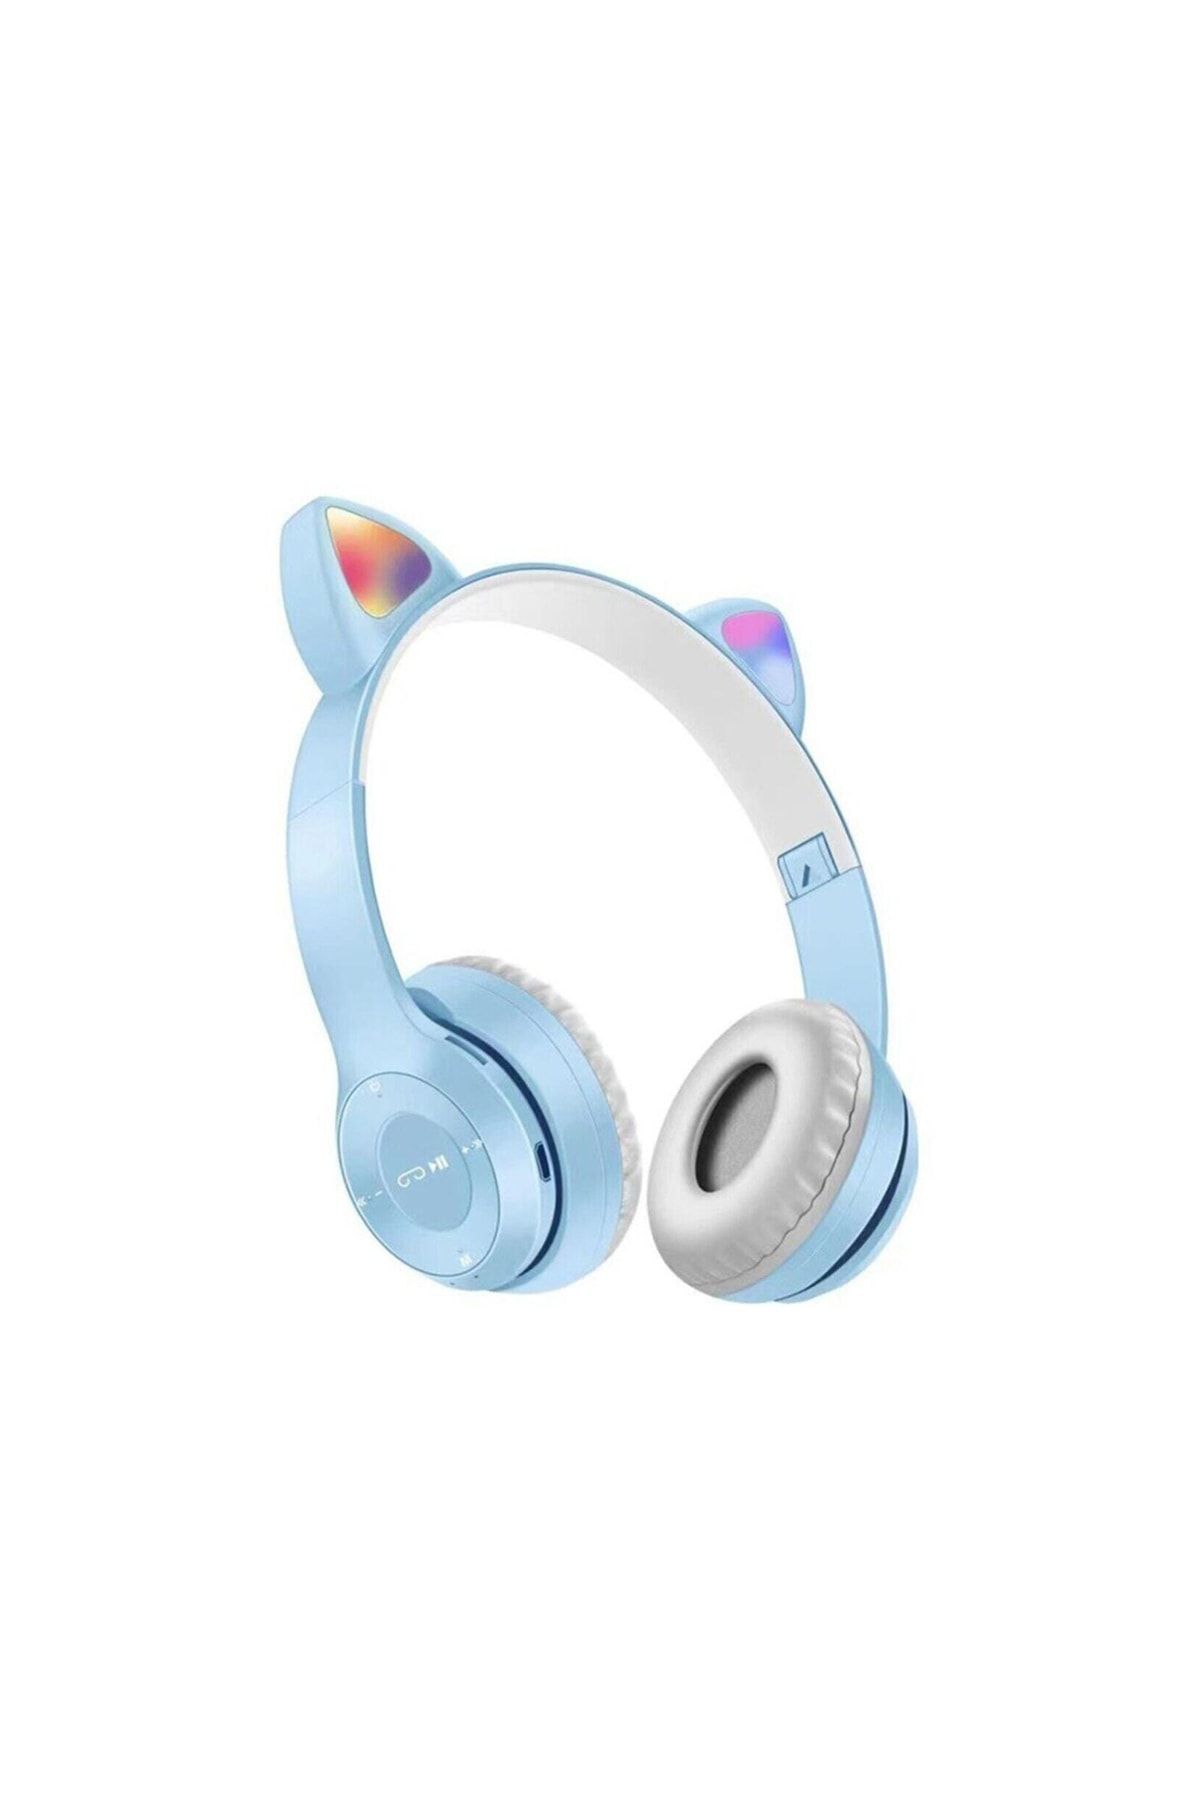 OWWOTECH P47m Işıklı Bluetooth Kulaklık 5.0 Kablosuz Katlanabilir Kedili Kulaklık Parti Işıklı Kulaklık